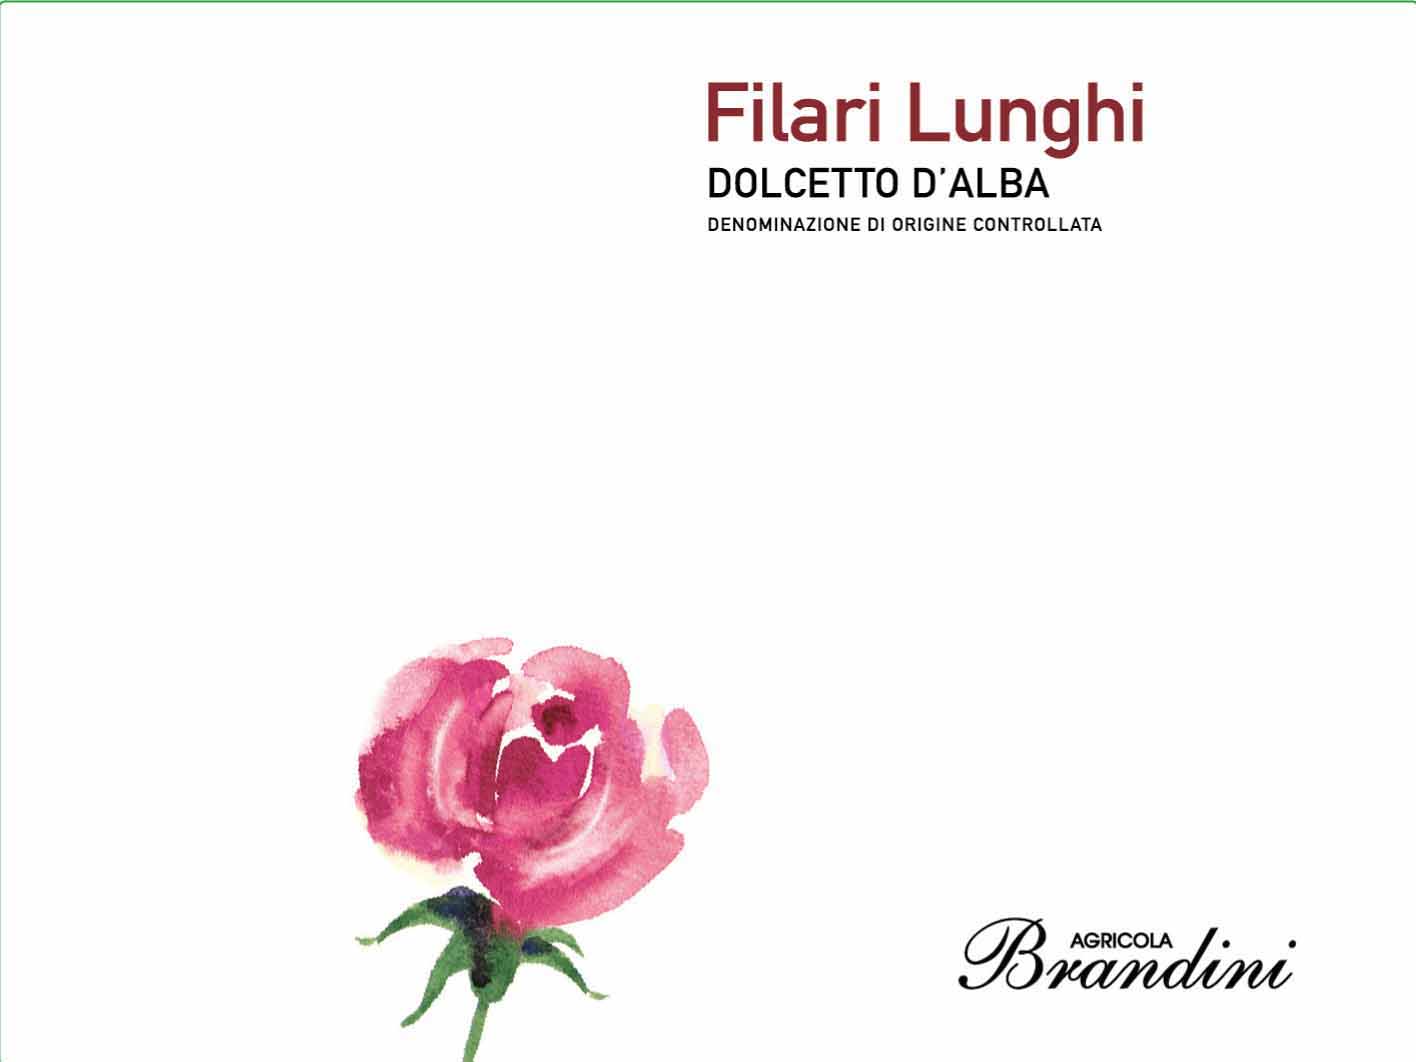 Brandini - Dolcetto d'Alba - Filari Lunghi label